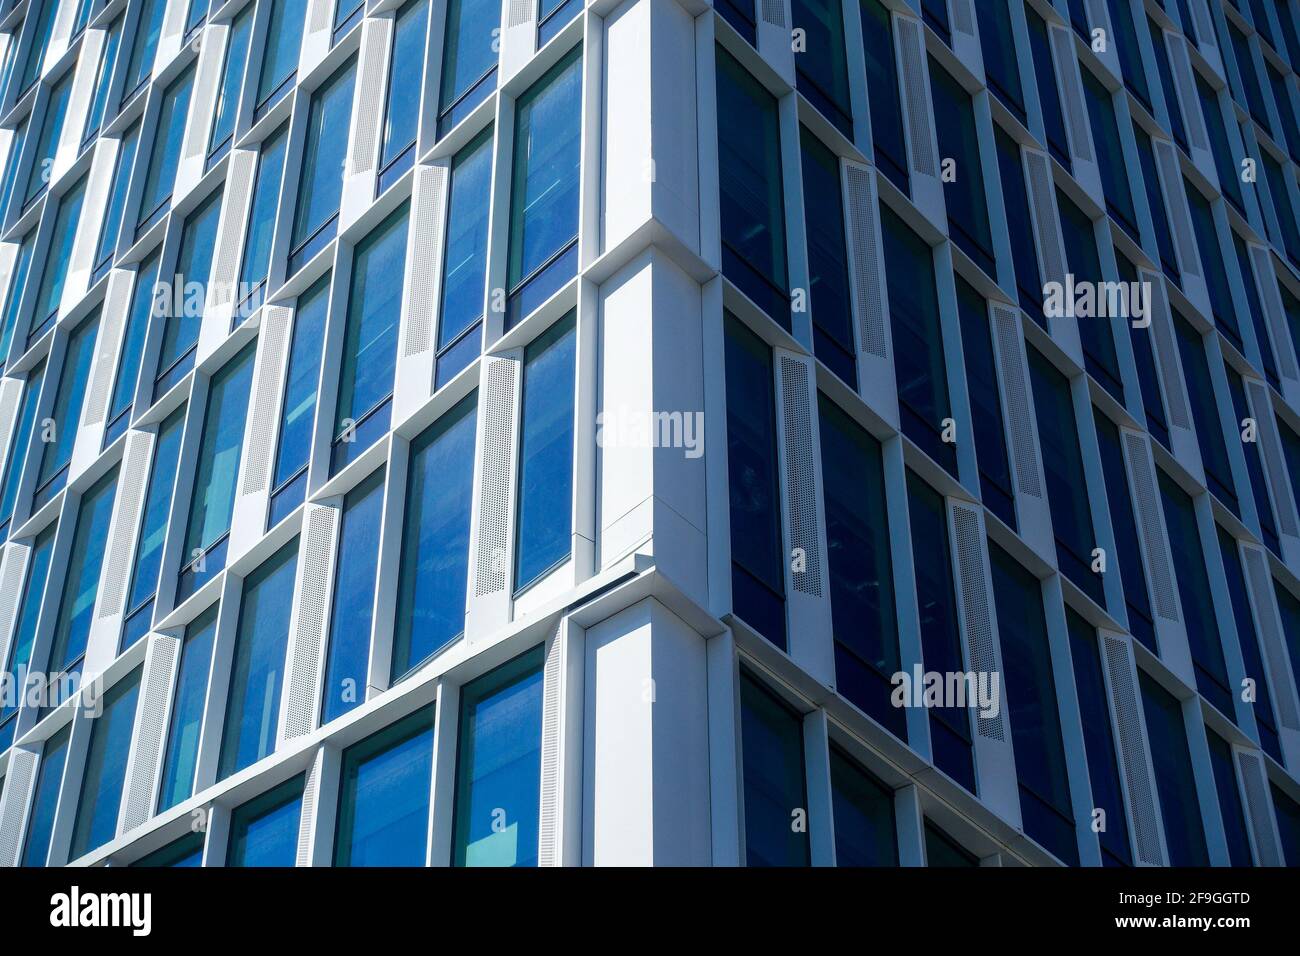 Al bordo dell'edificio per uffici con grandi finestre, con lato luminoso illuminato dal sole e lato scuro e ombreggiato Foto Stock